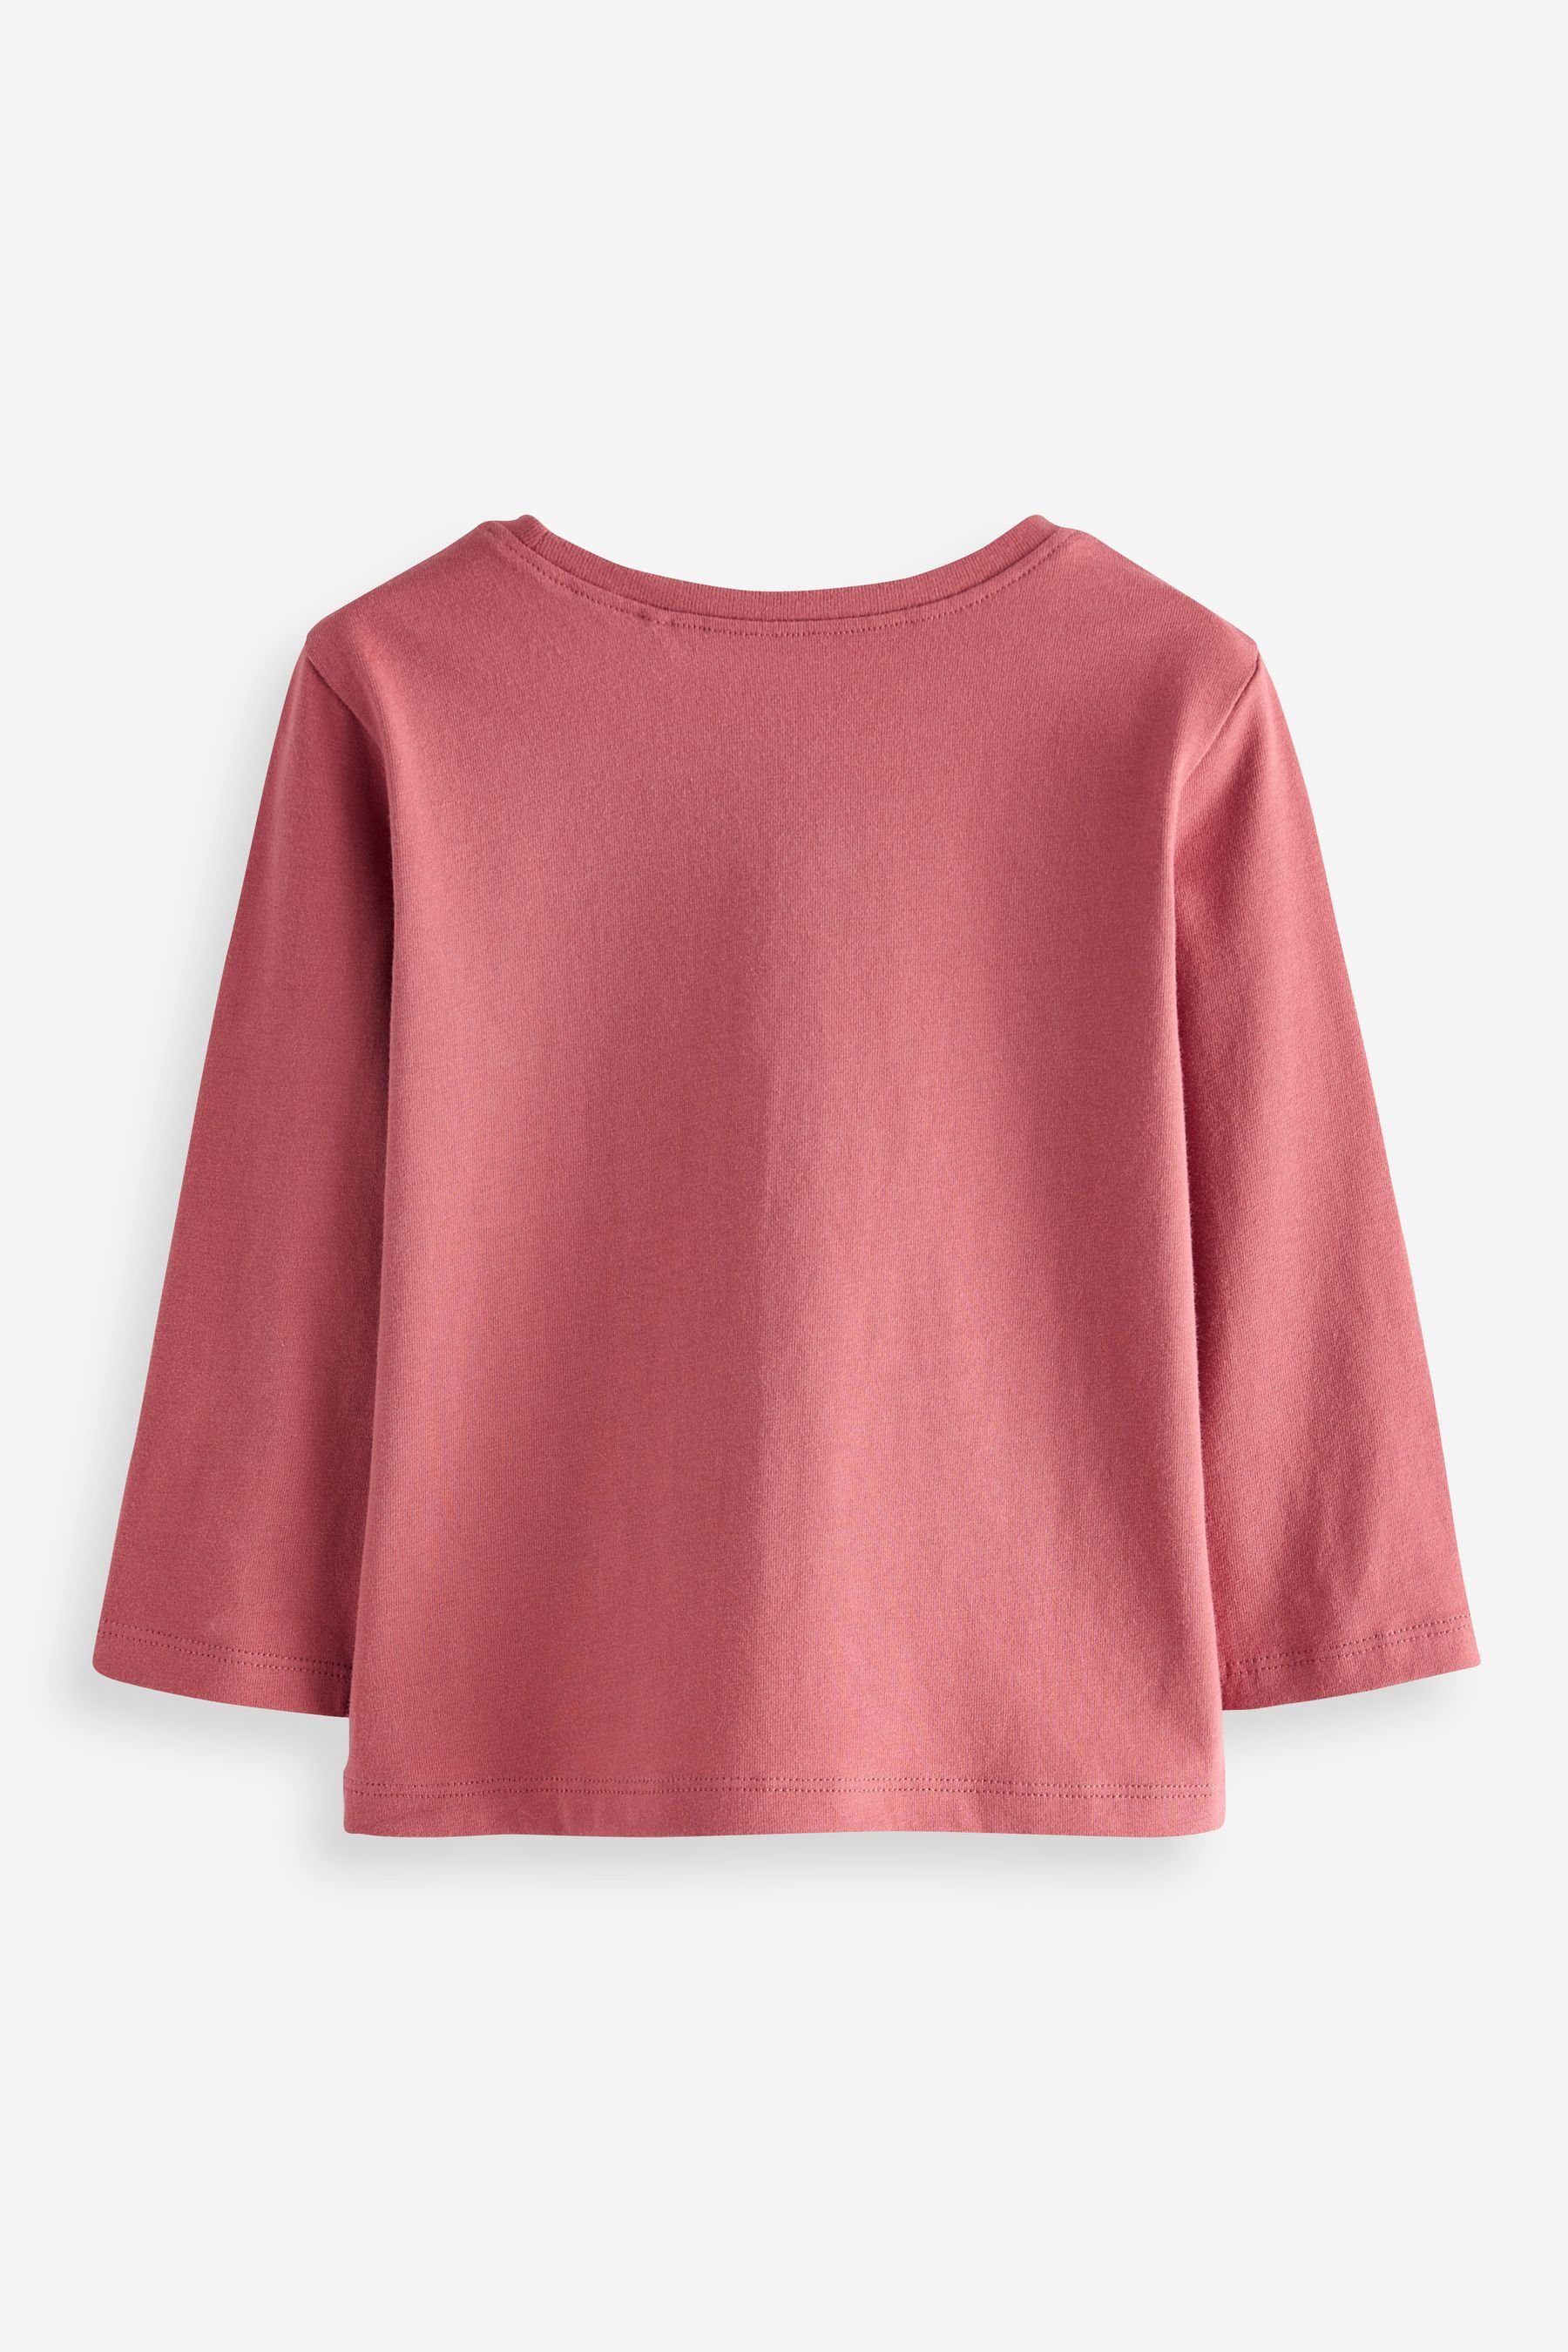 Next Langarm-Shirts, Bright 3er-Pack Langarmshirt (3-tlg) Pink